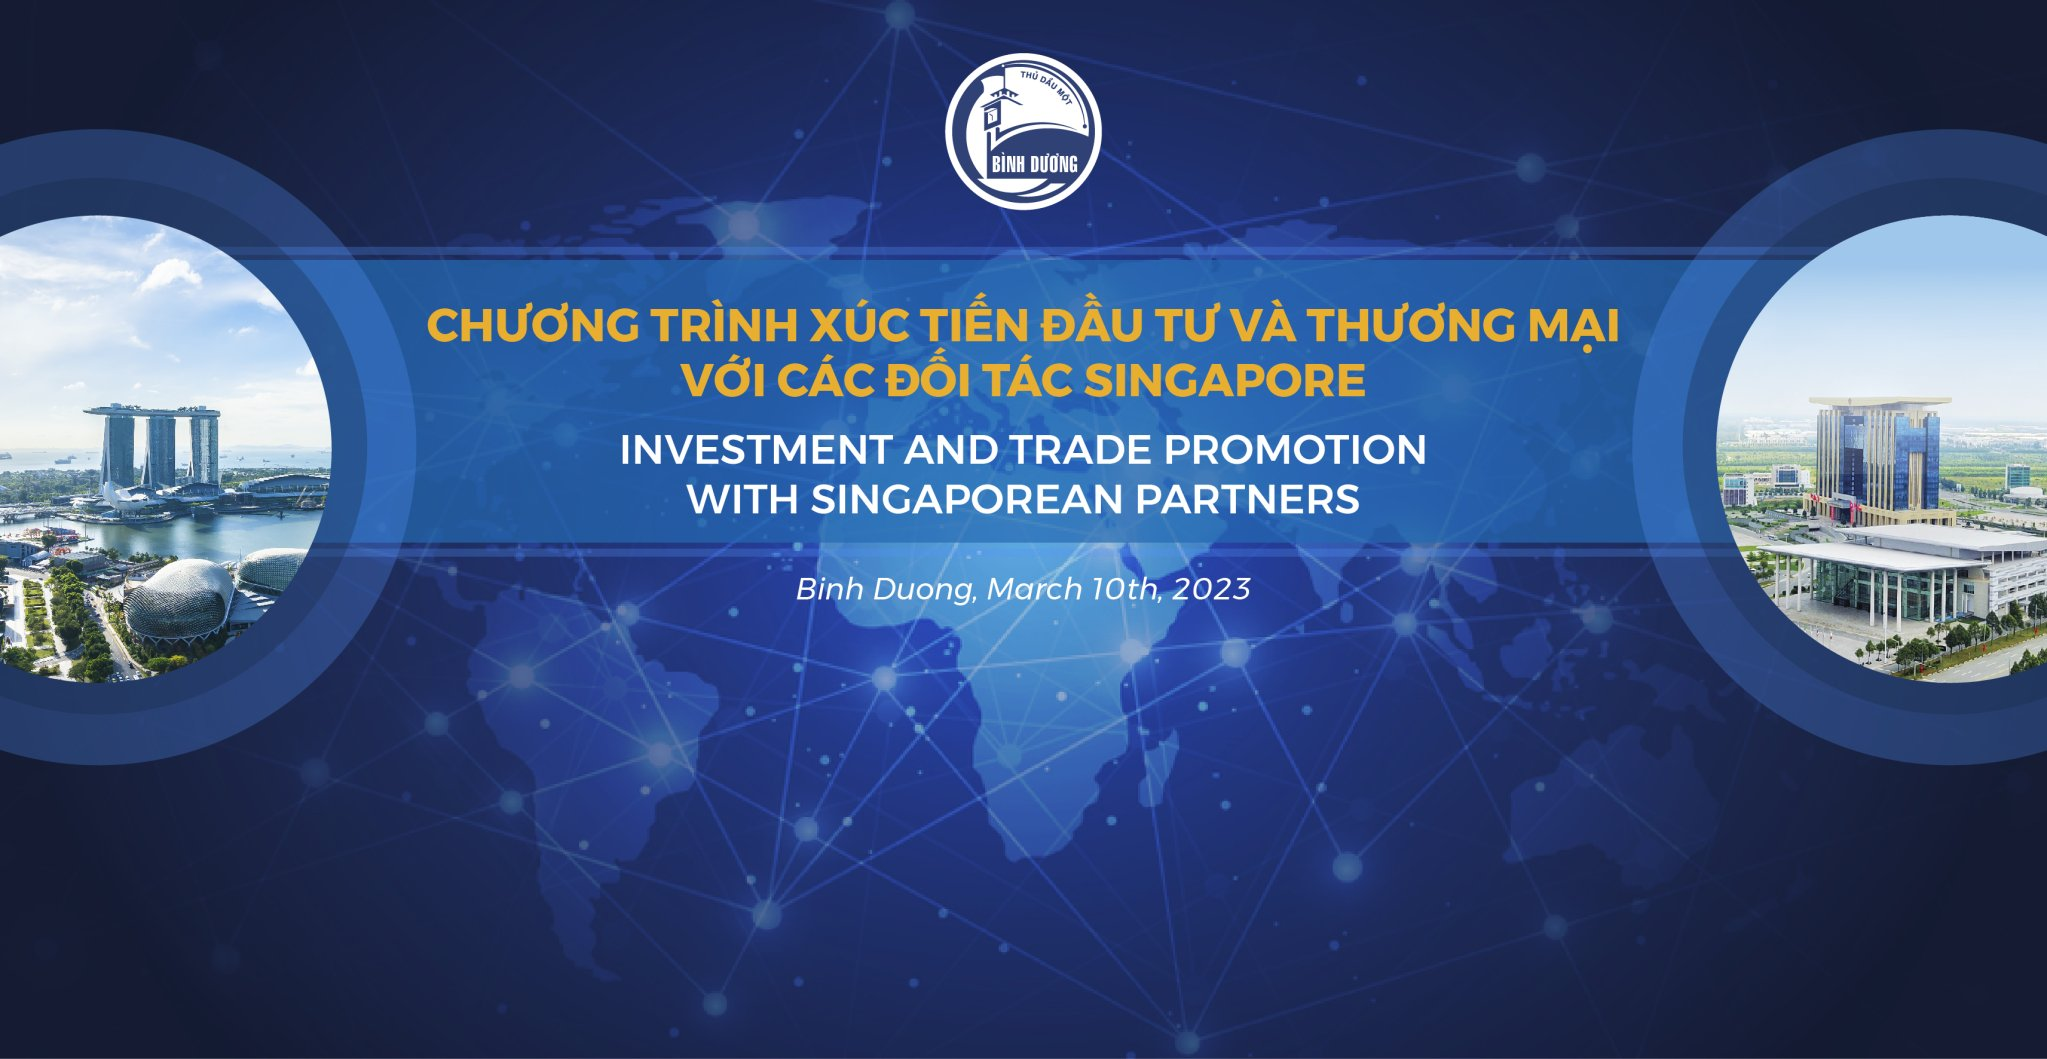 Mời tham dự Chương trình xúc tiến đầu tư và thương mại với các đối tác Singapore